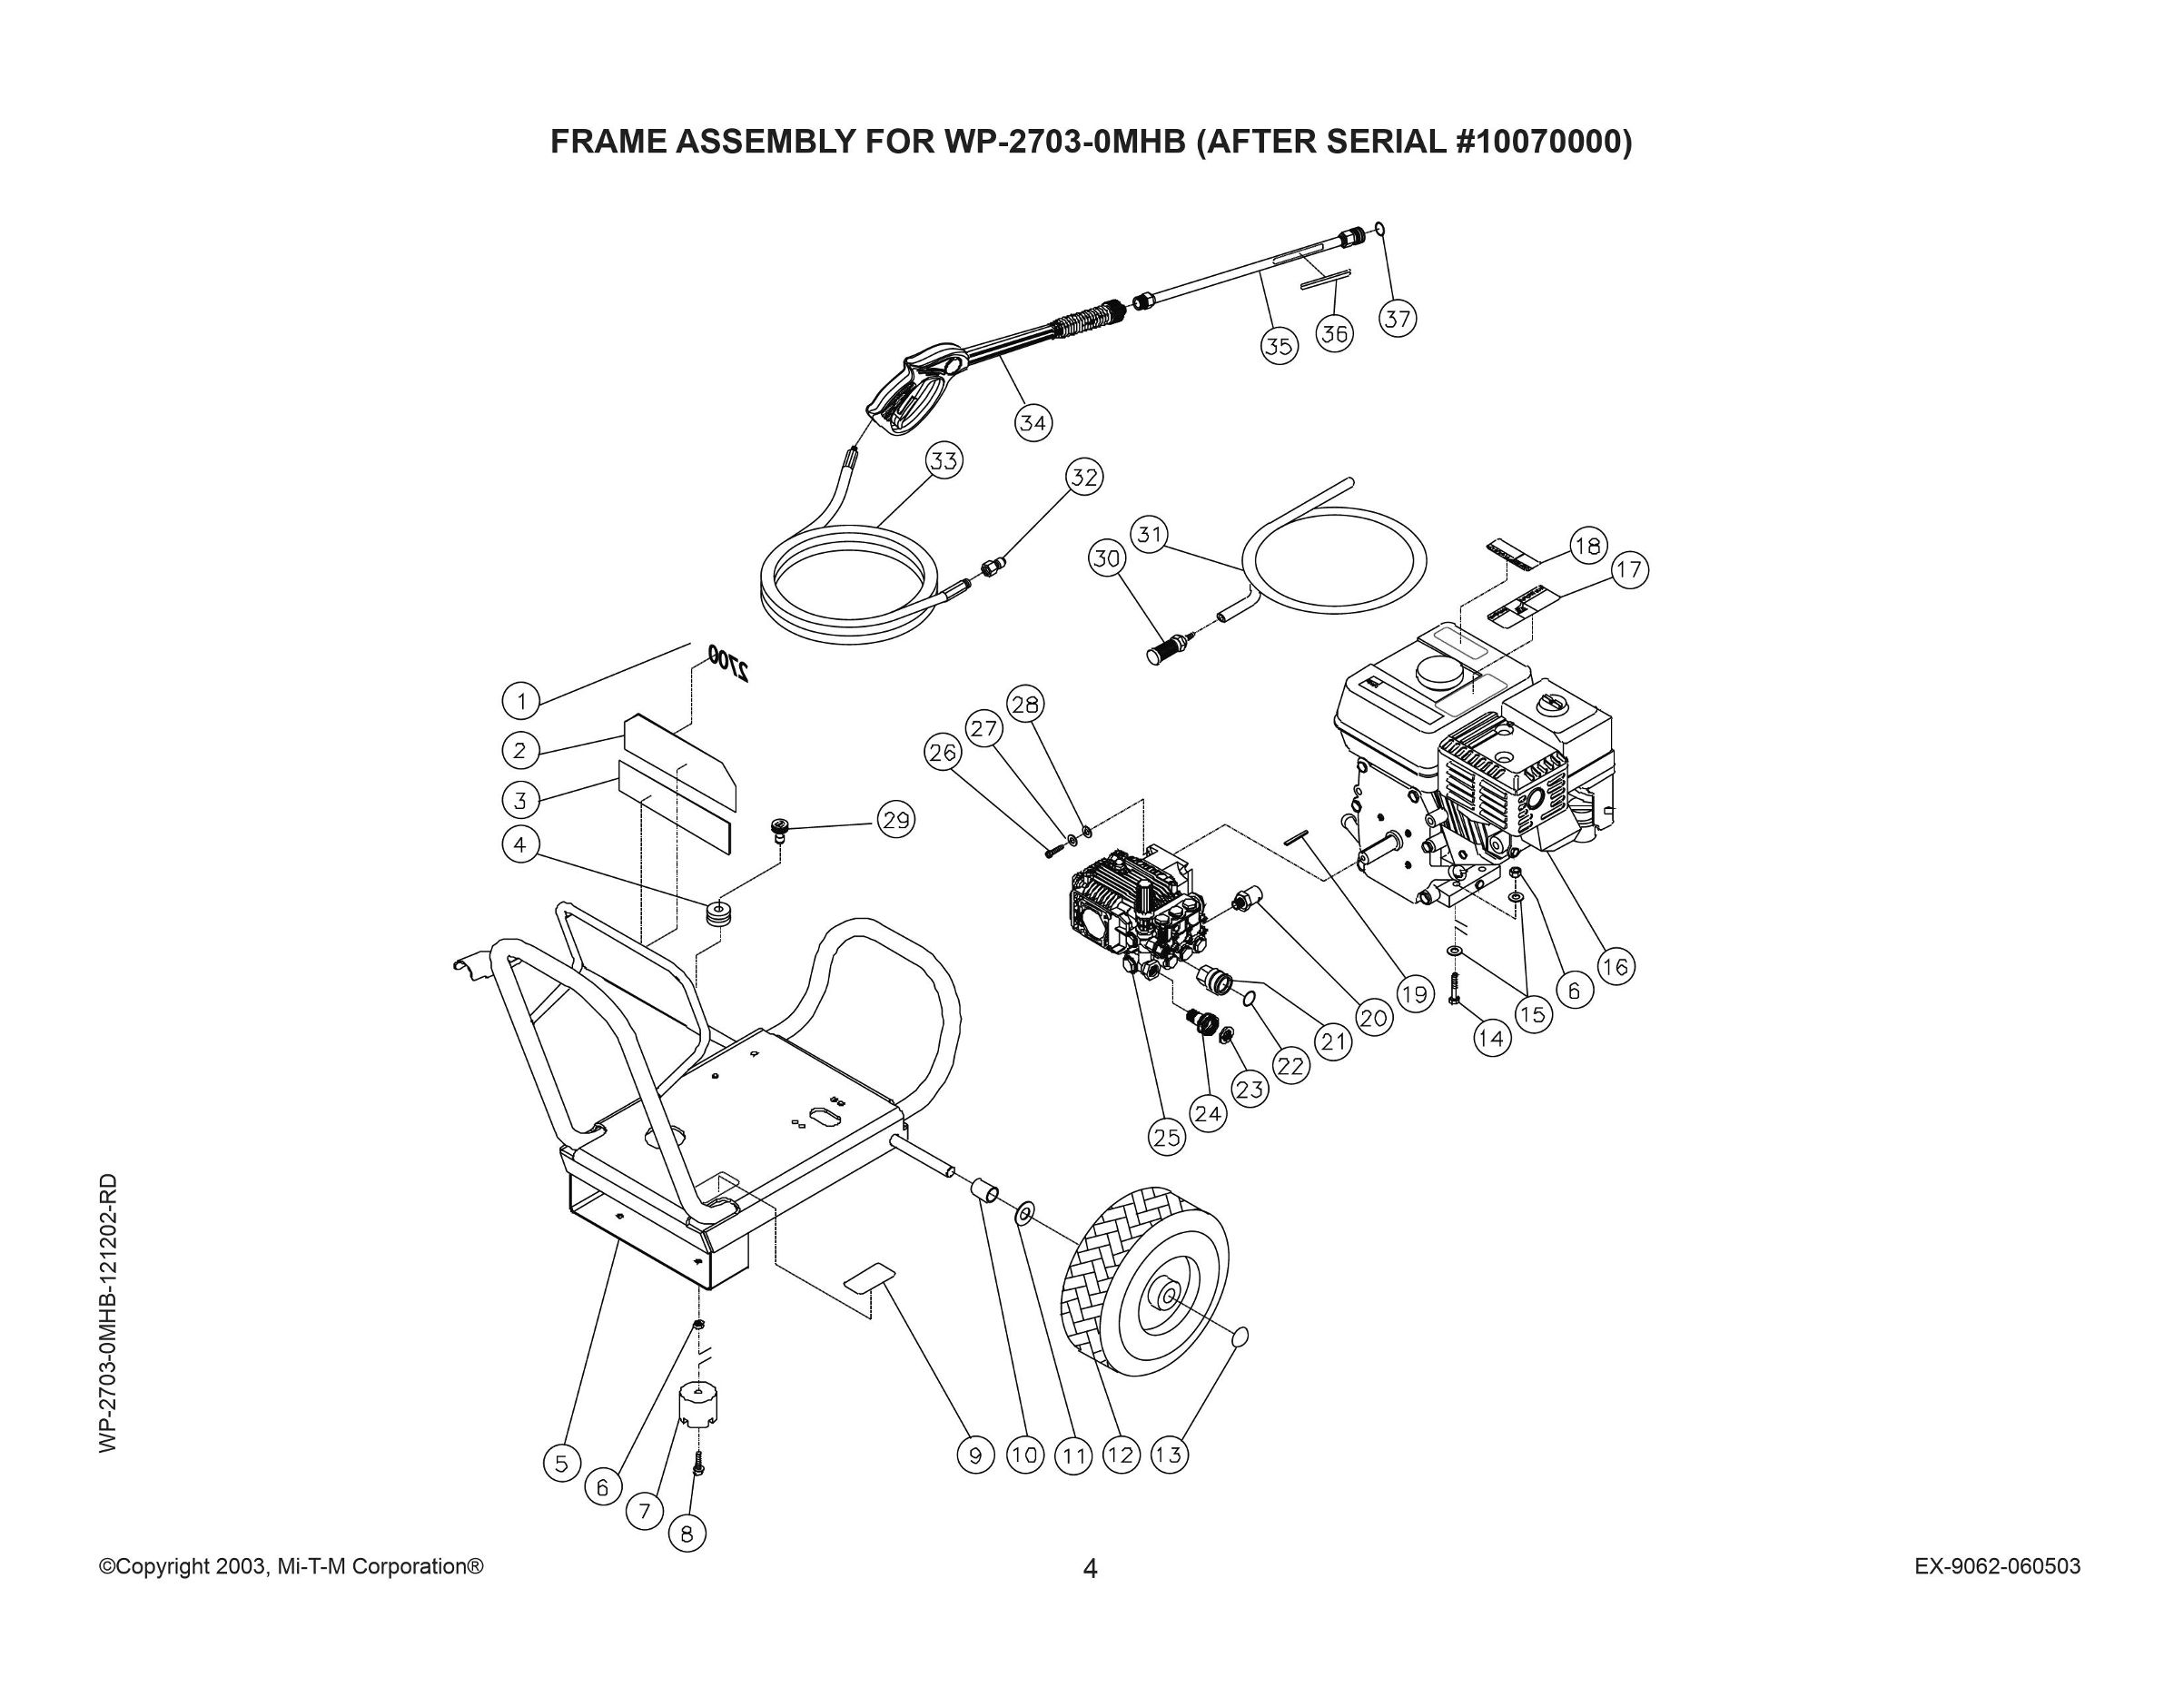 WP-2700-0MIB Parts, pump, repair kit, breakdown & owners manual.